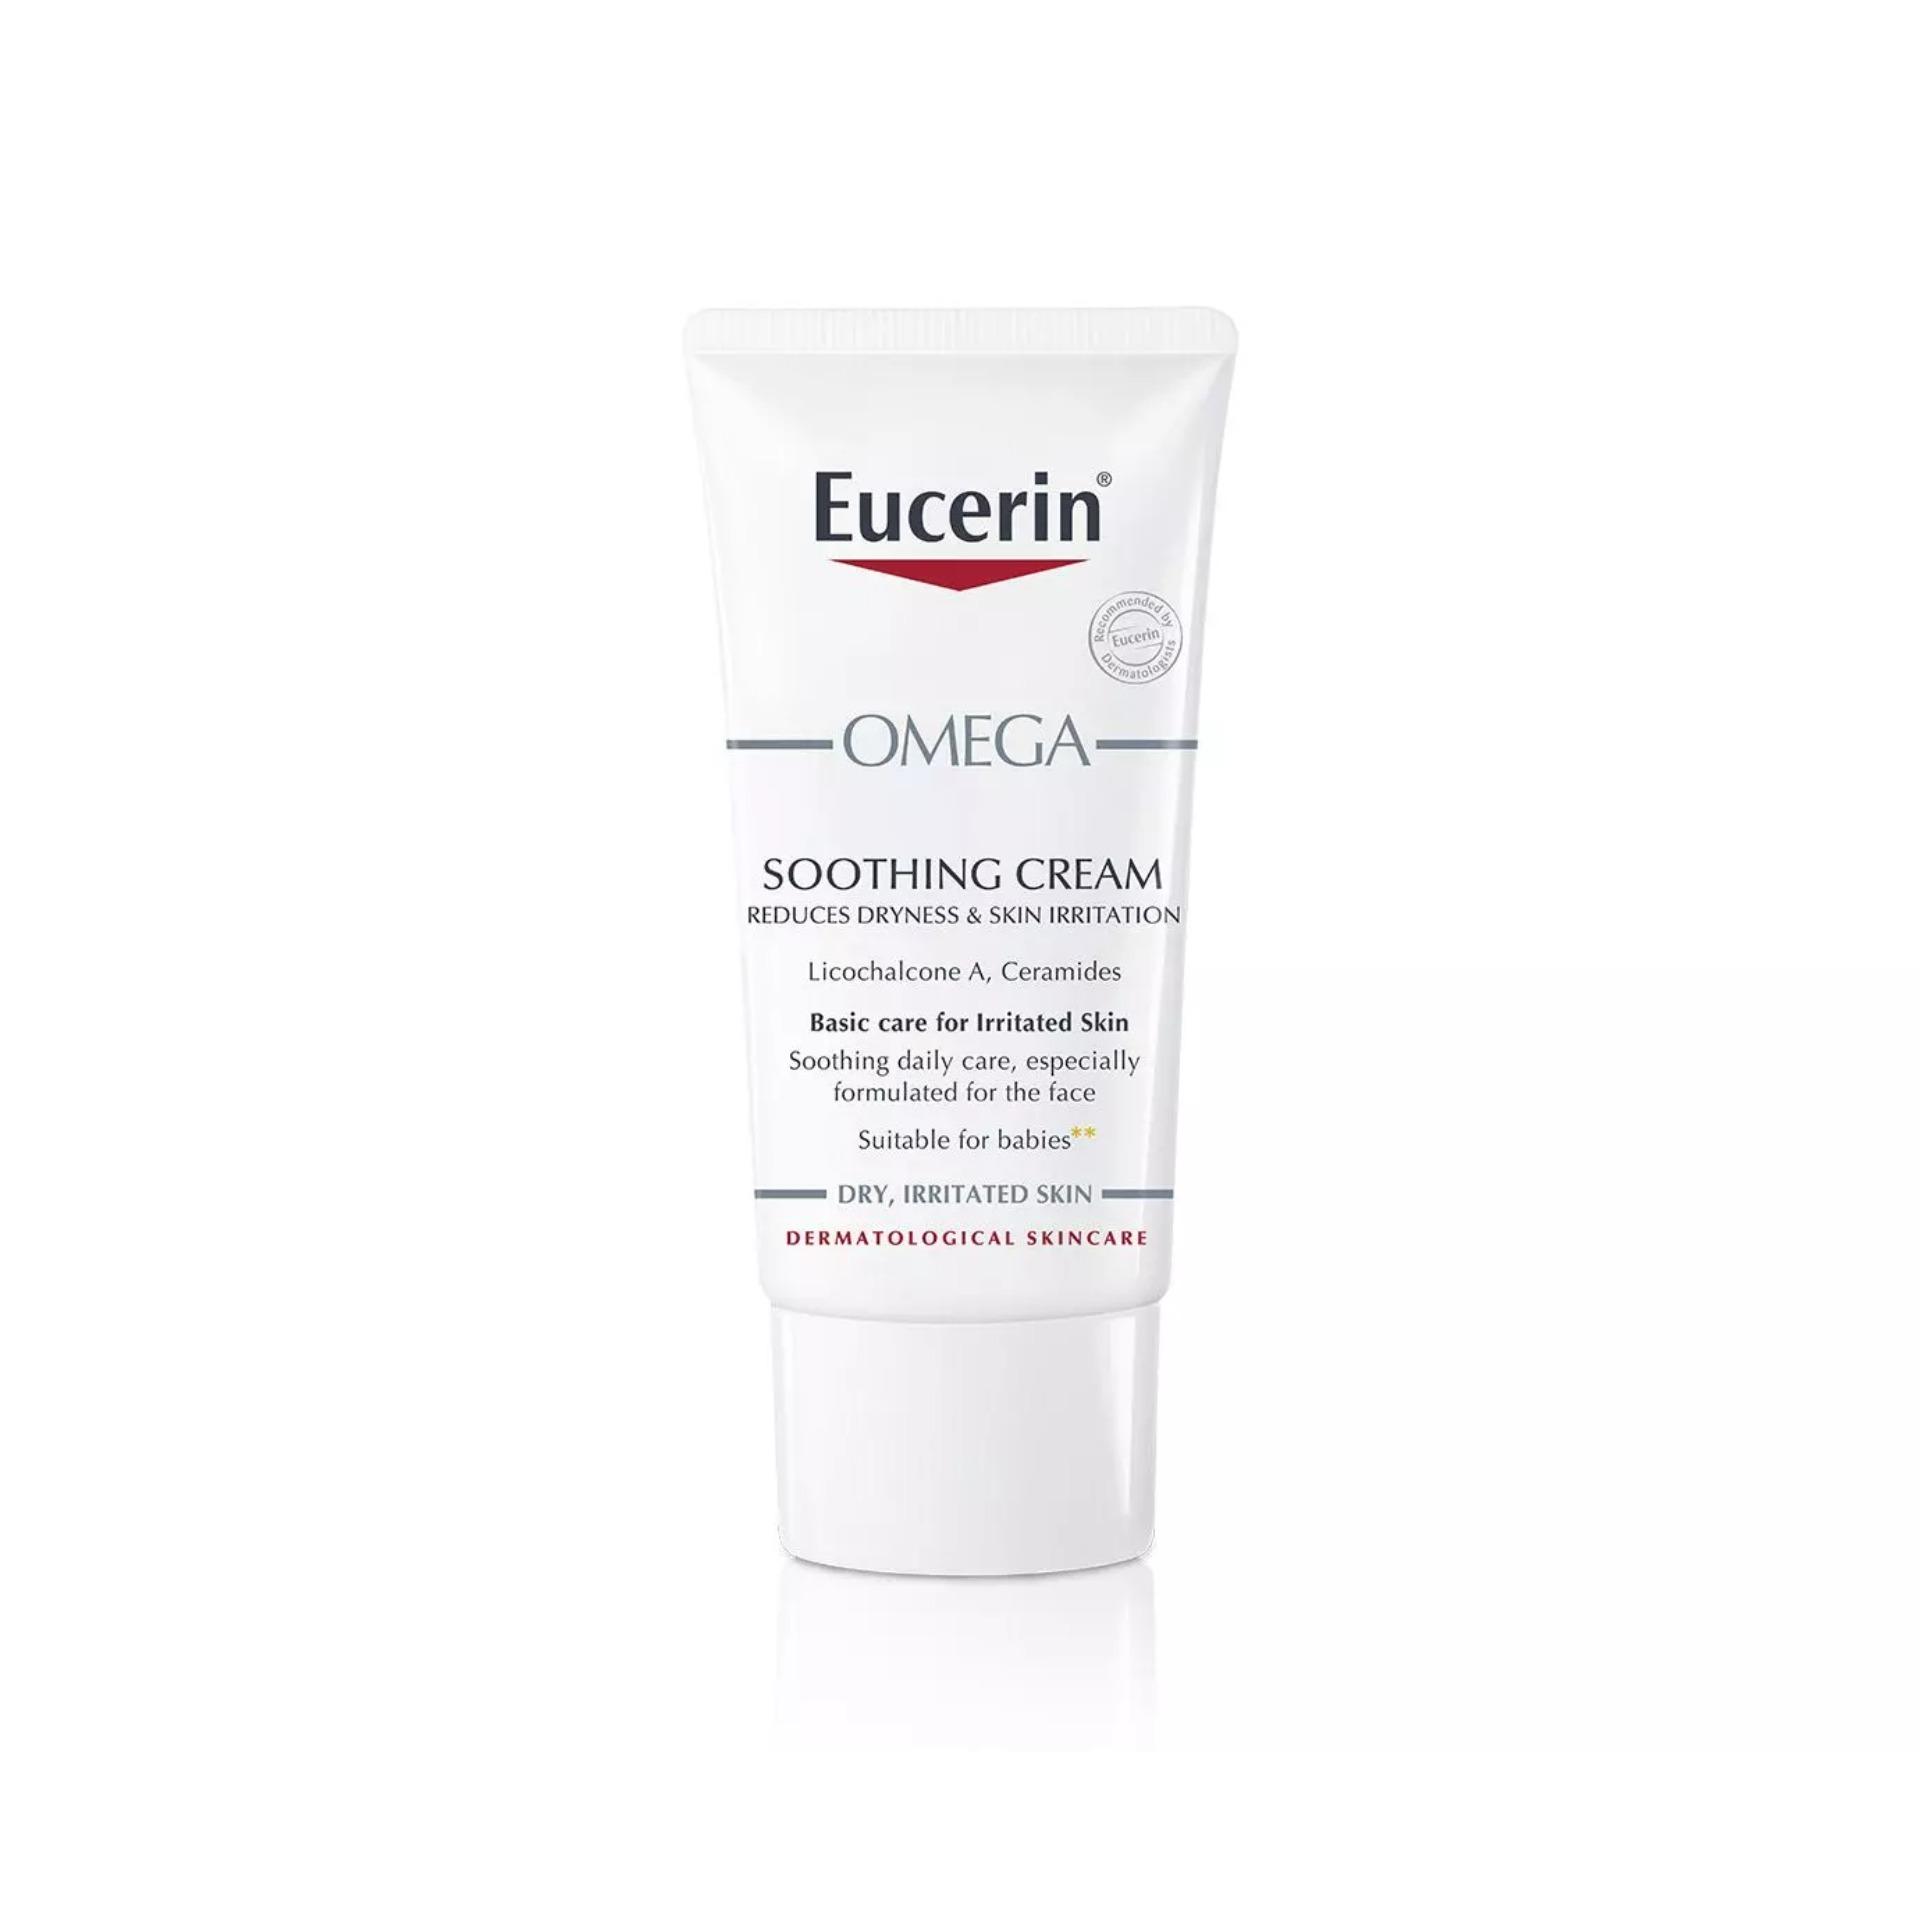 ราคา Eucerin AtoControl Omega Soothing Cream 12% ผิวอักเสบ แห้ง แดงและคัน ผื่นภูมิแพ้ ceremide +LICOCHALCONE A 50 ml.